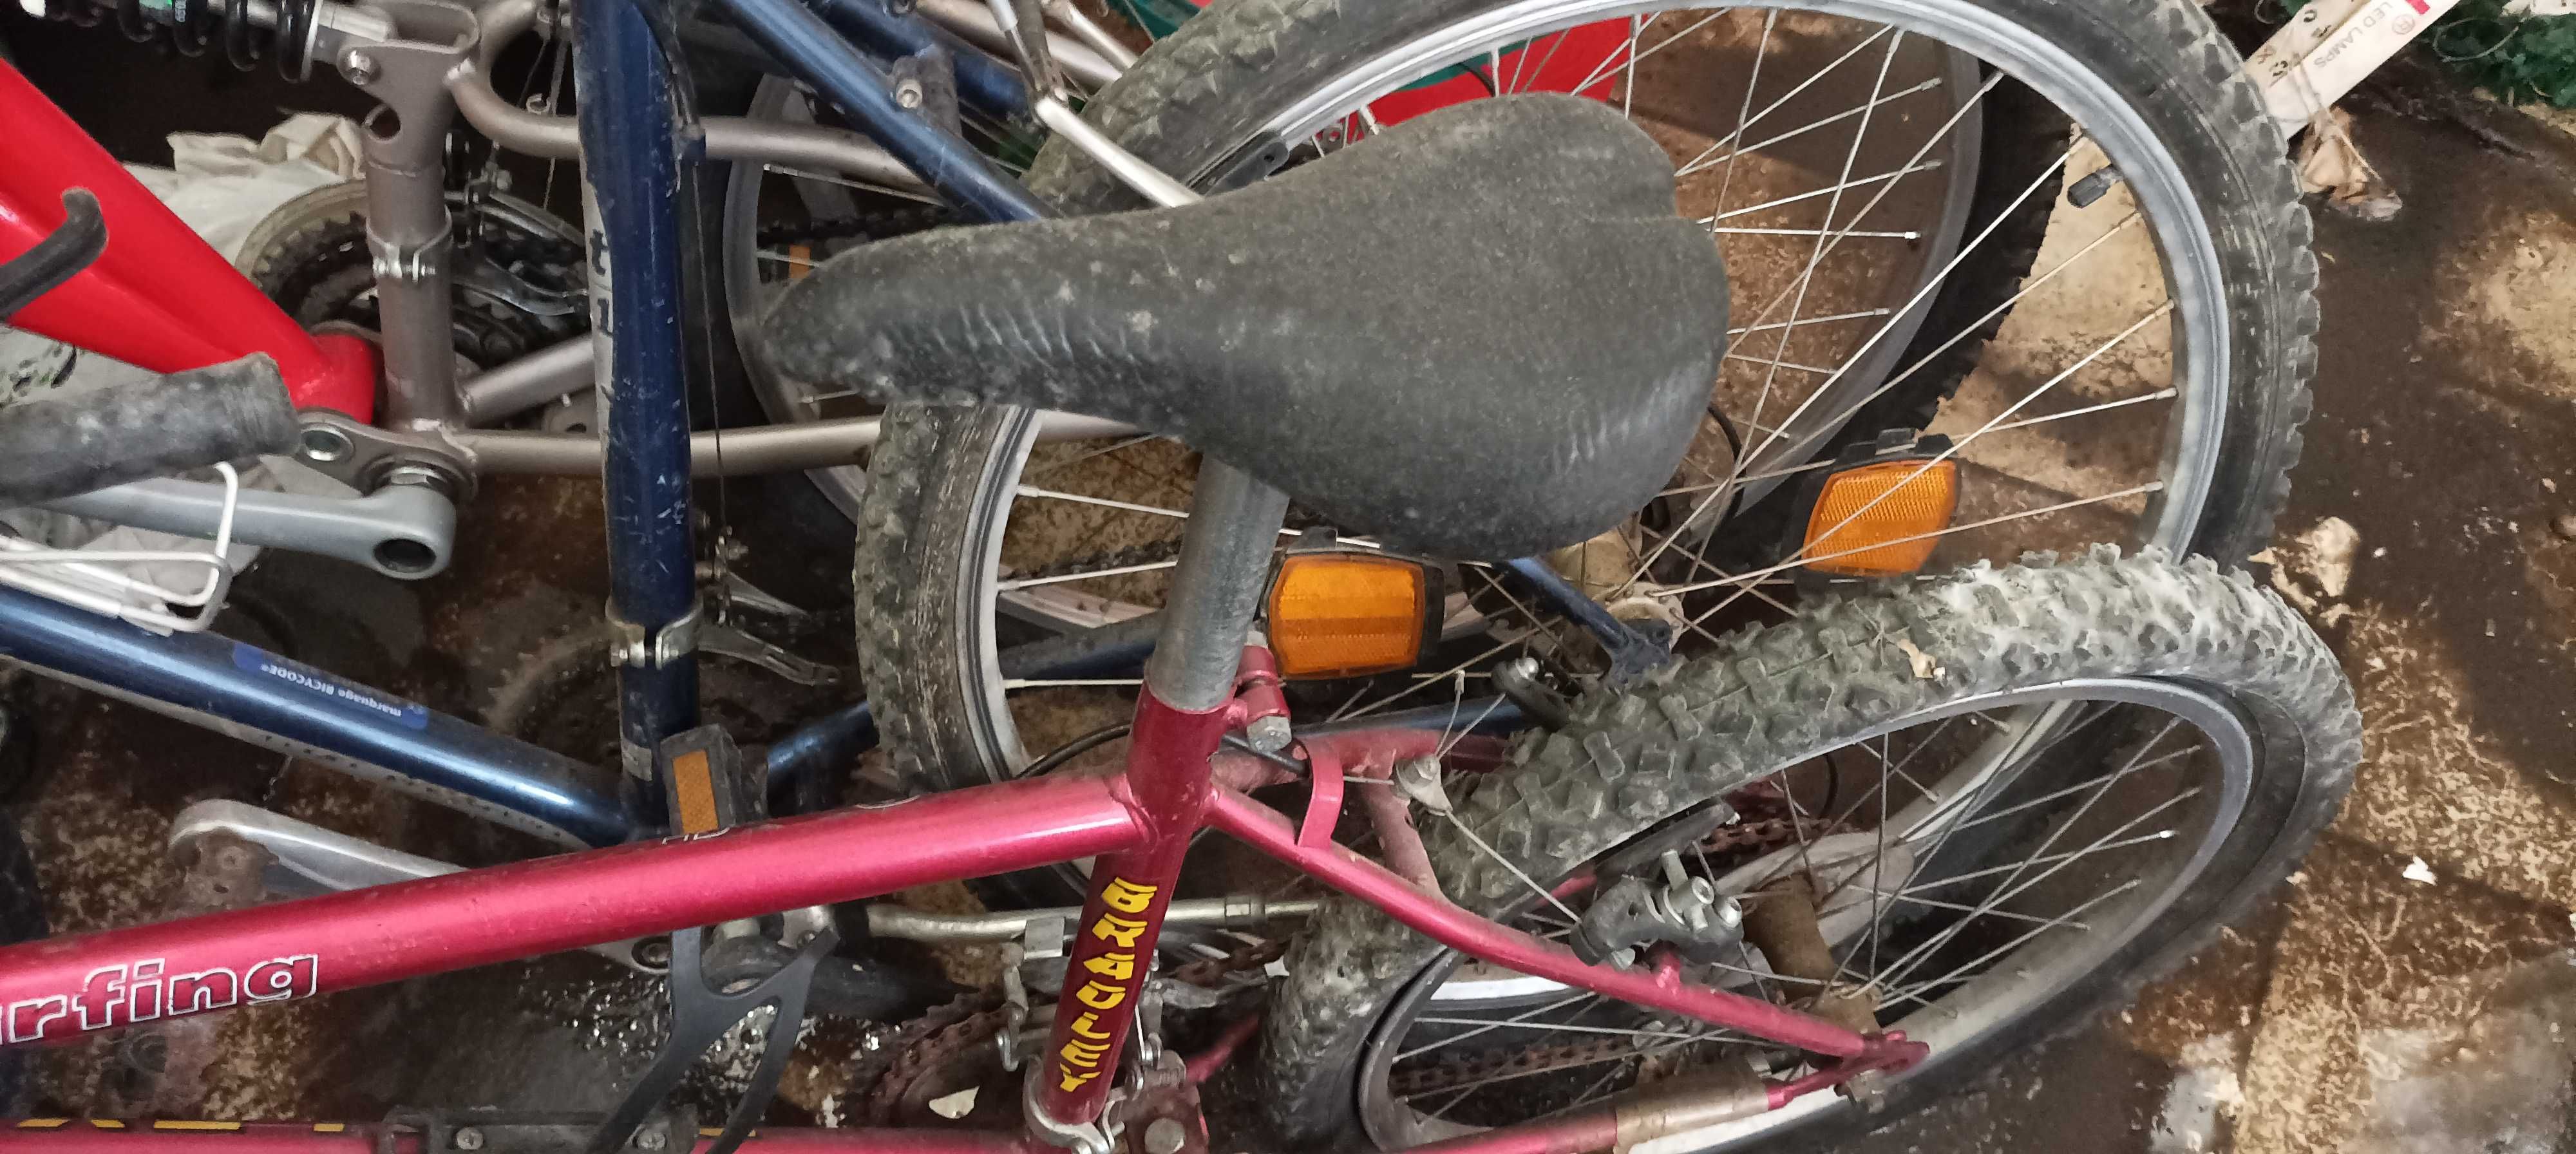 Bicicletas para uma familia